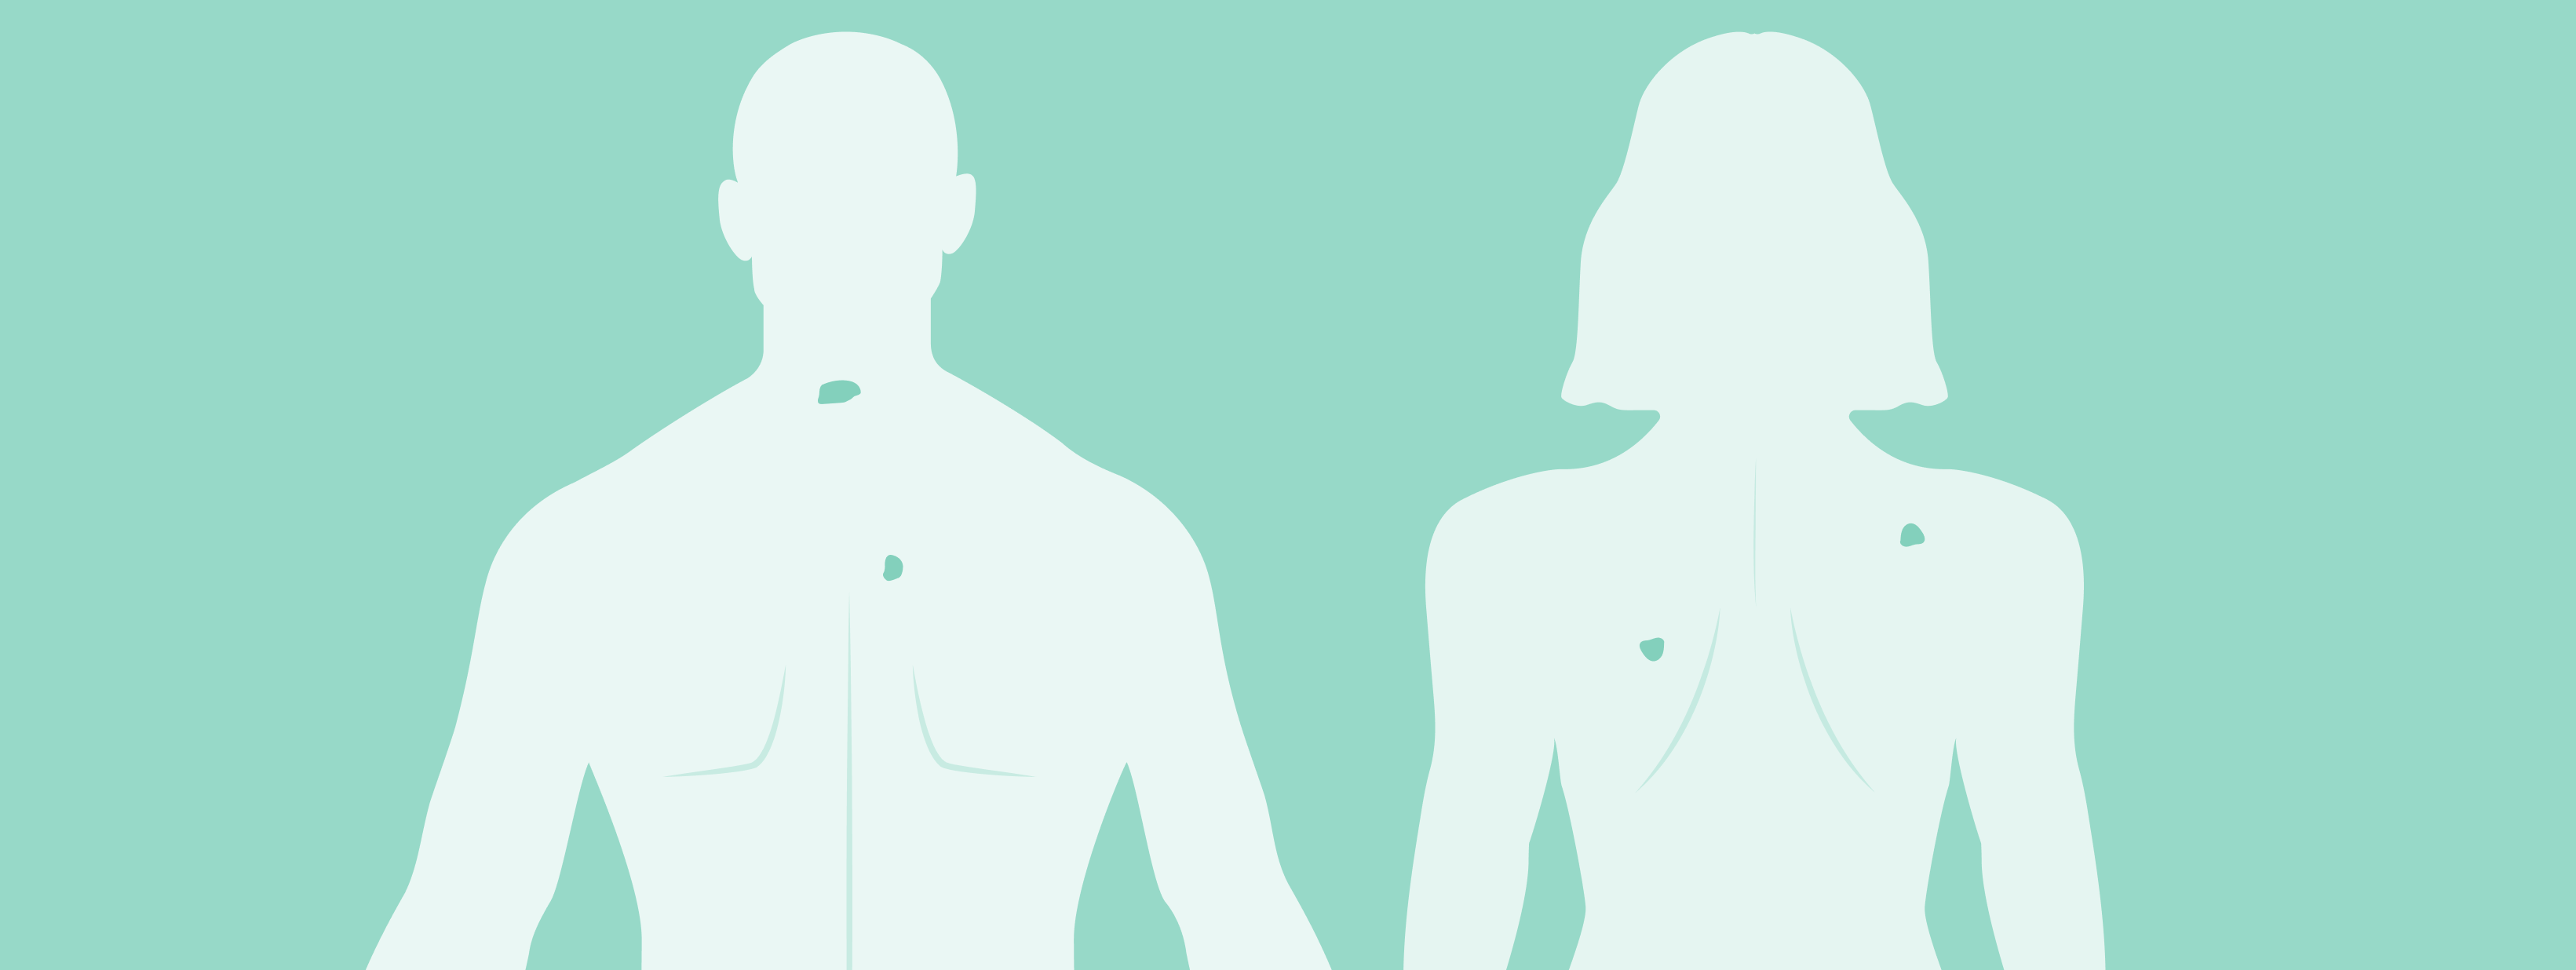 Illustrazione delle schiene di un uomo e di una donna con disegnato un melanoma